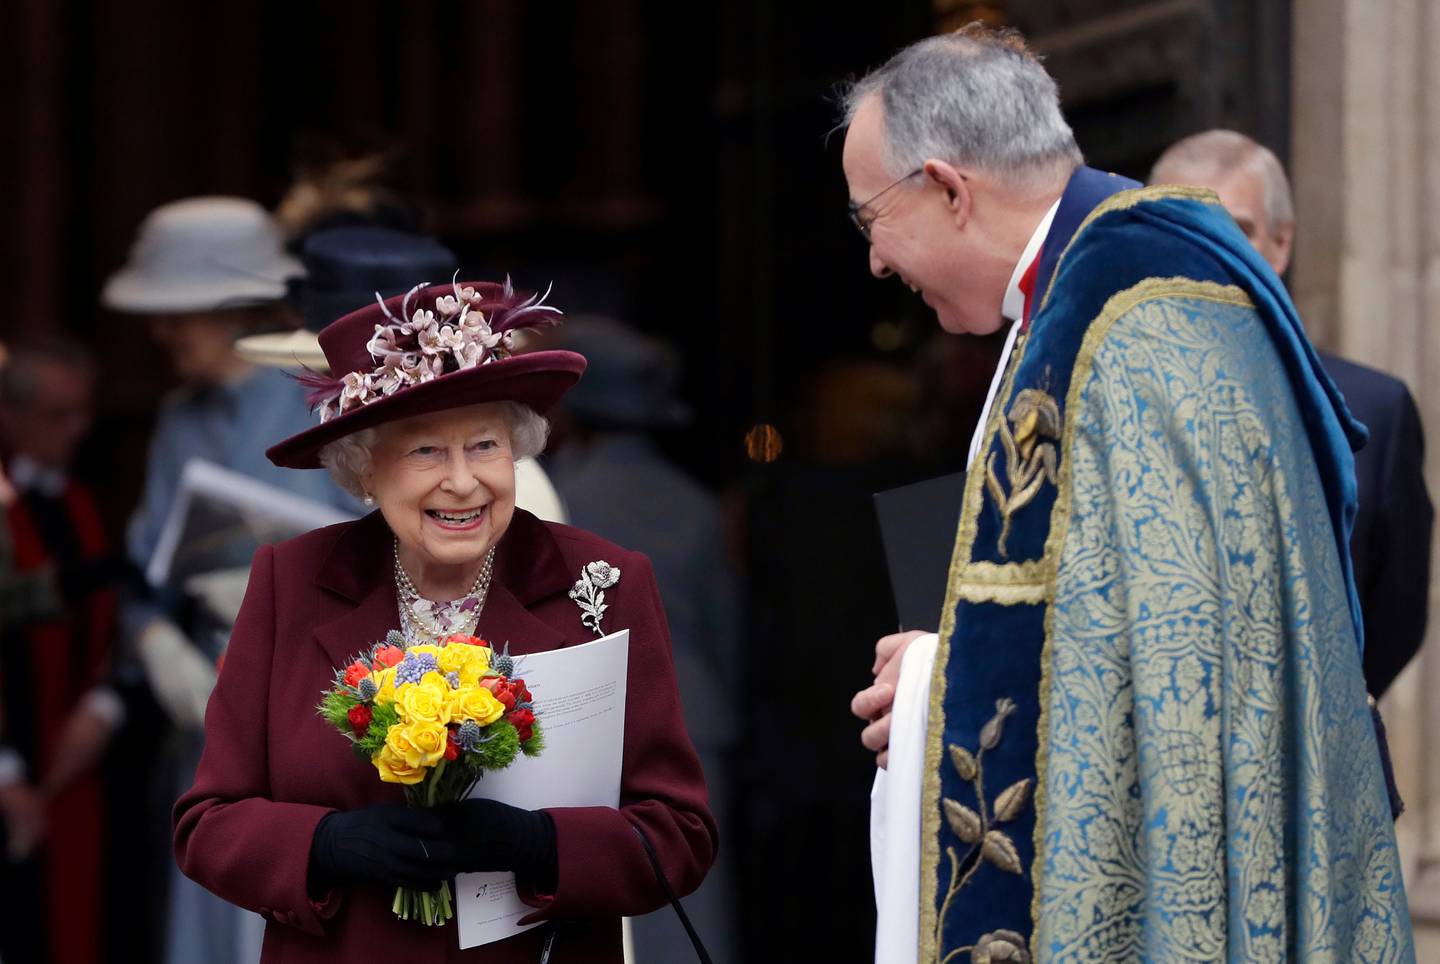 I mars deltok dronning Elizabeth II på en gudstjeneste i Westminster Abbey. I hele sin gjerning som dronning har hun hatt et nært forhold til kirken.